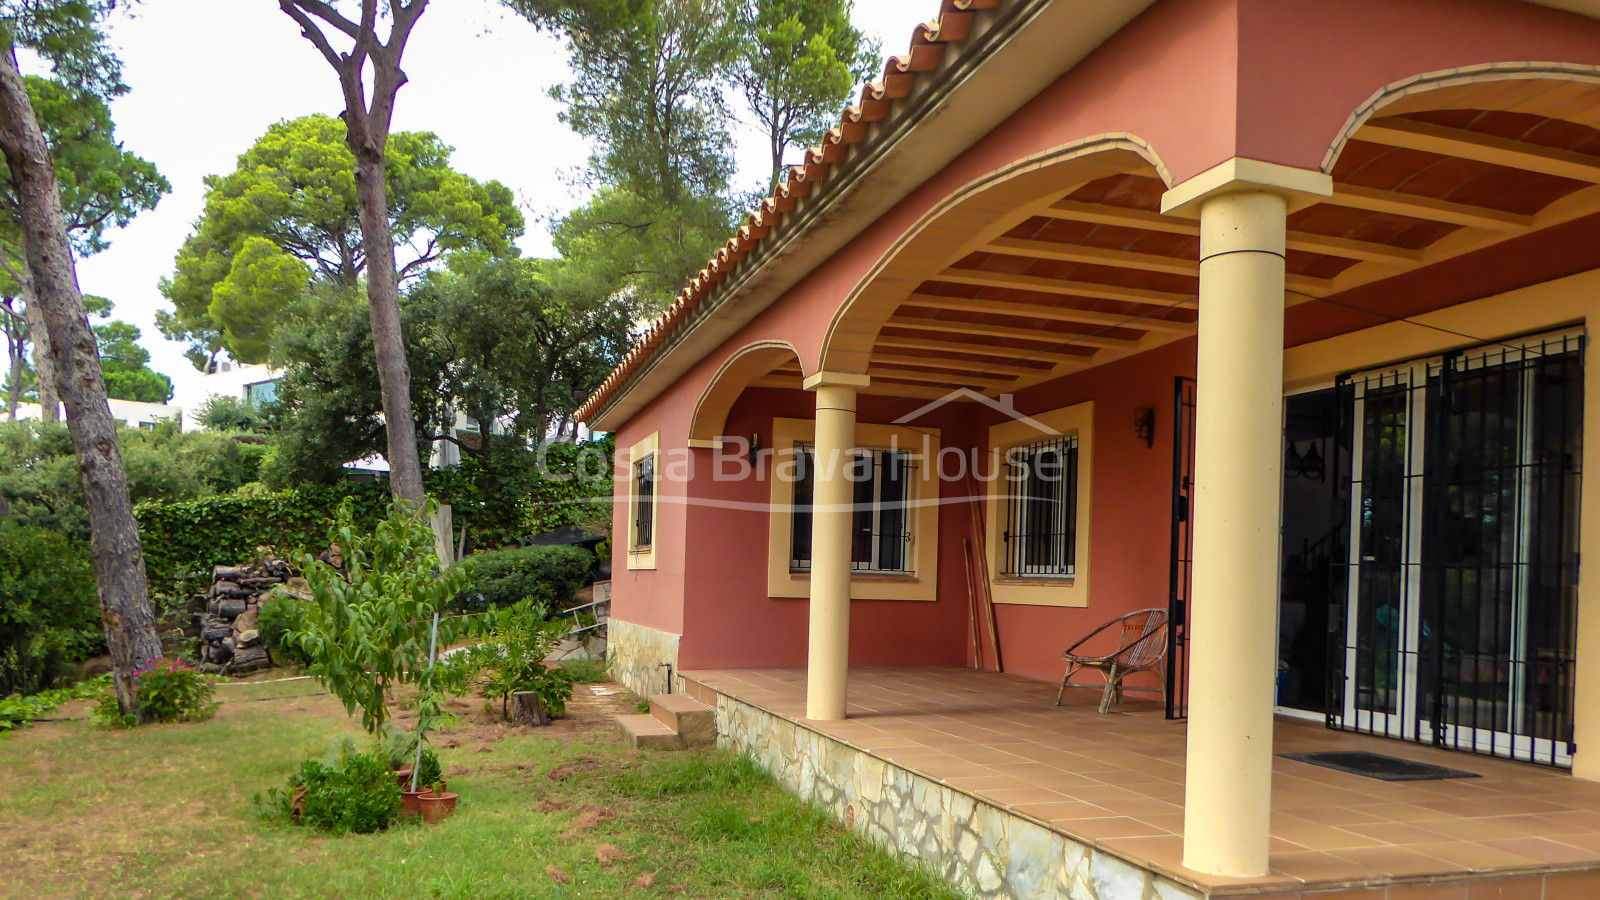 Casa mediterránea de estilo semirústico en venta en Tamariu